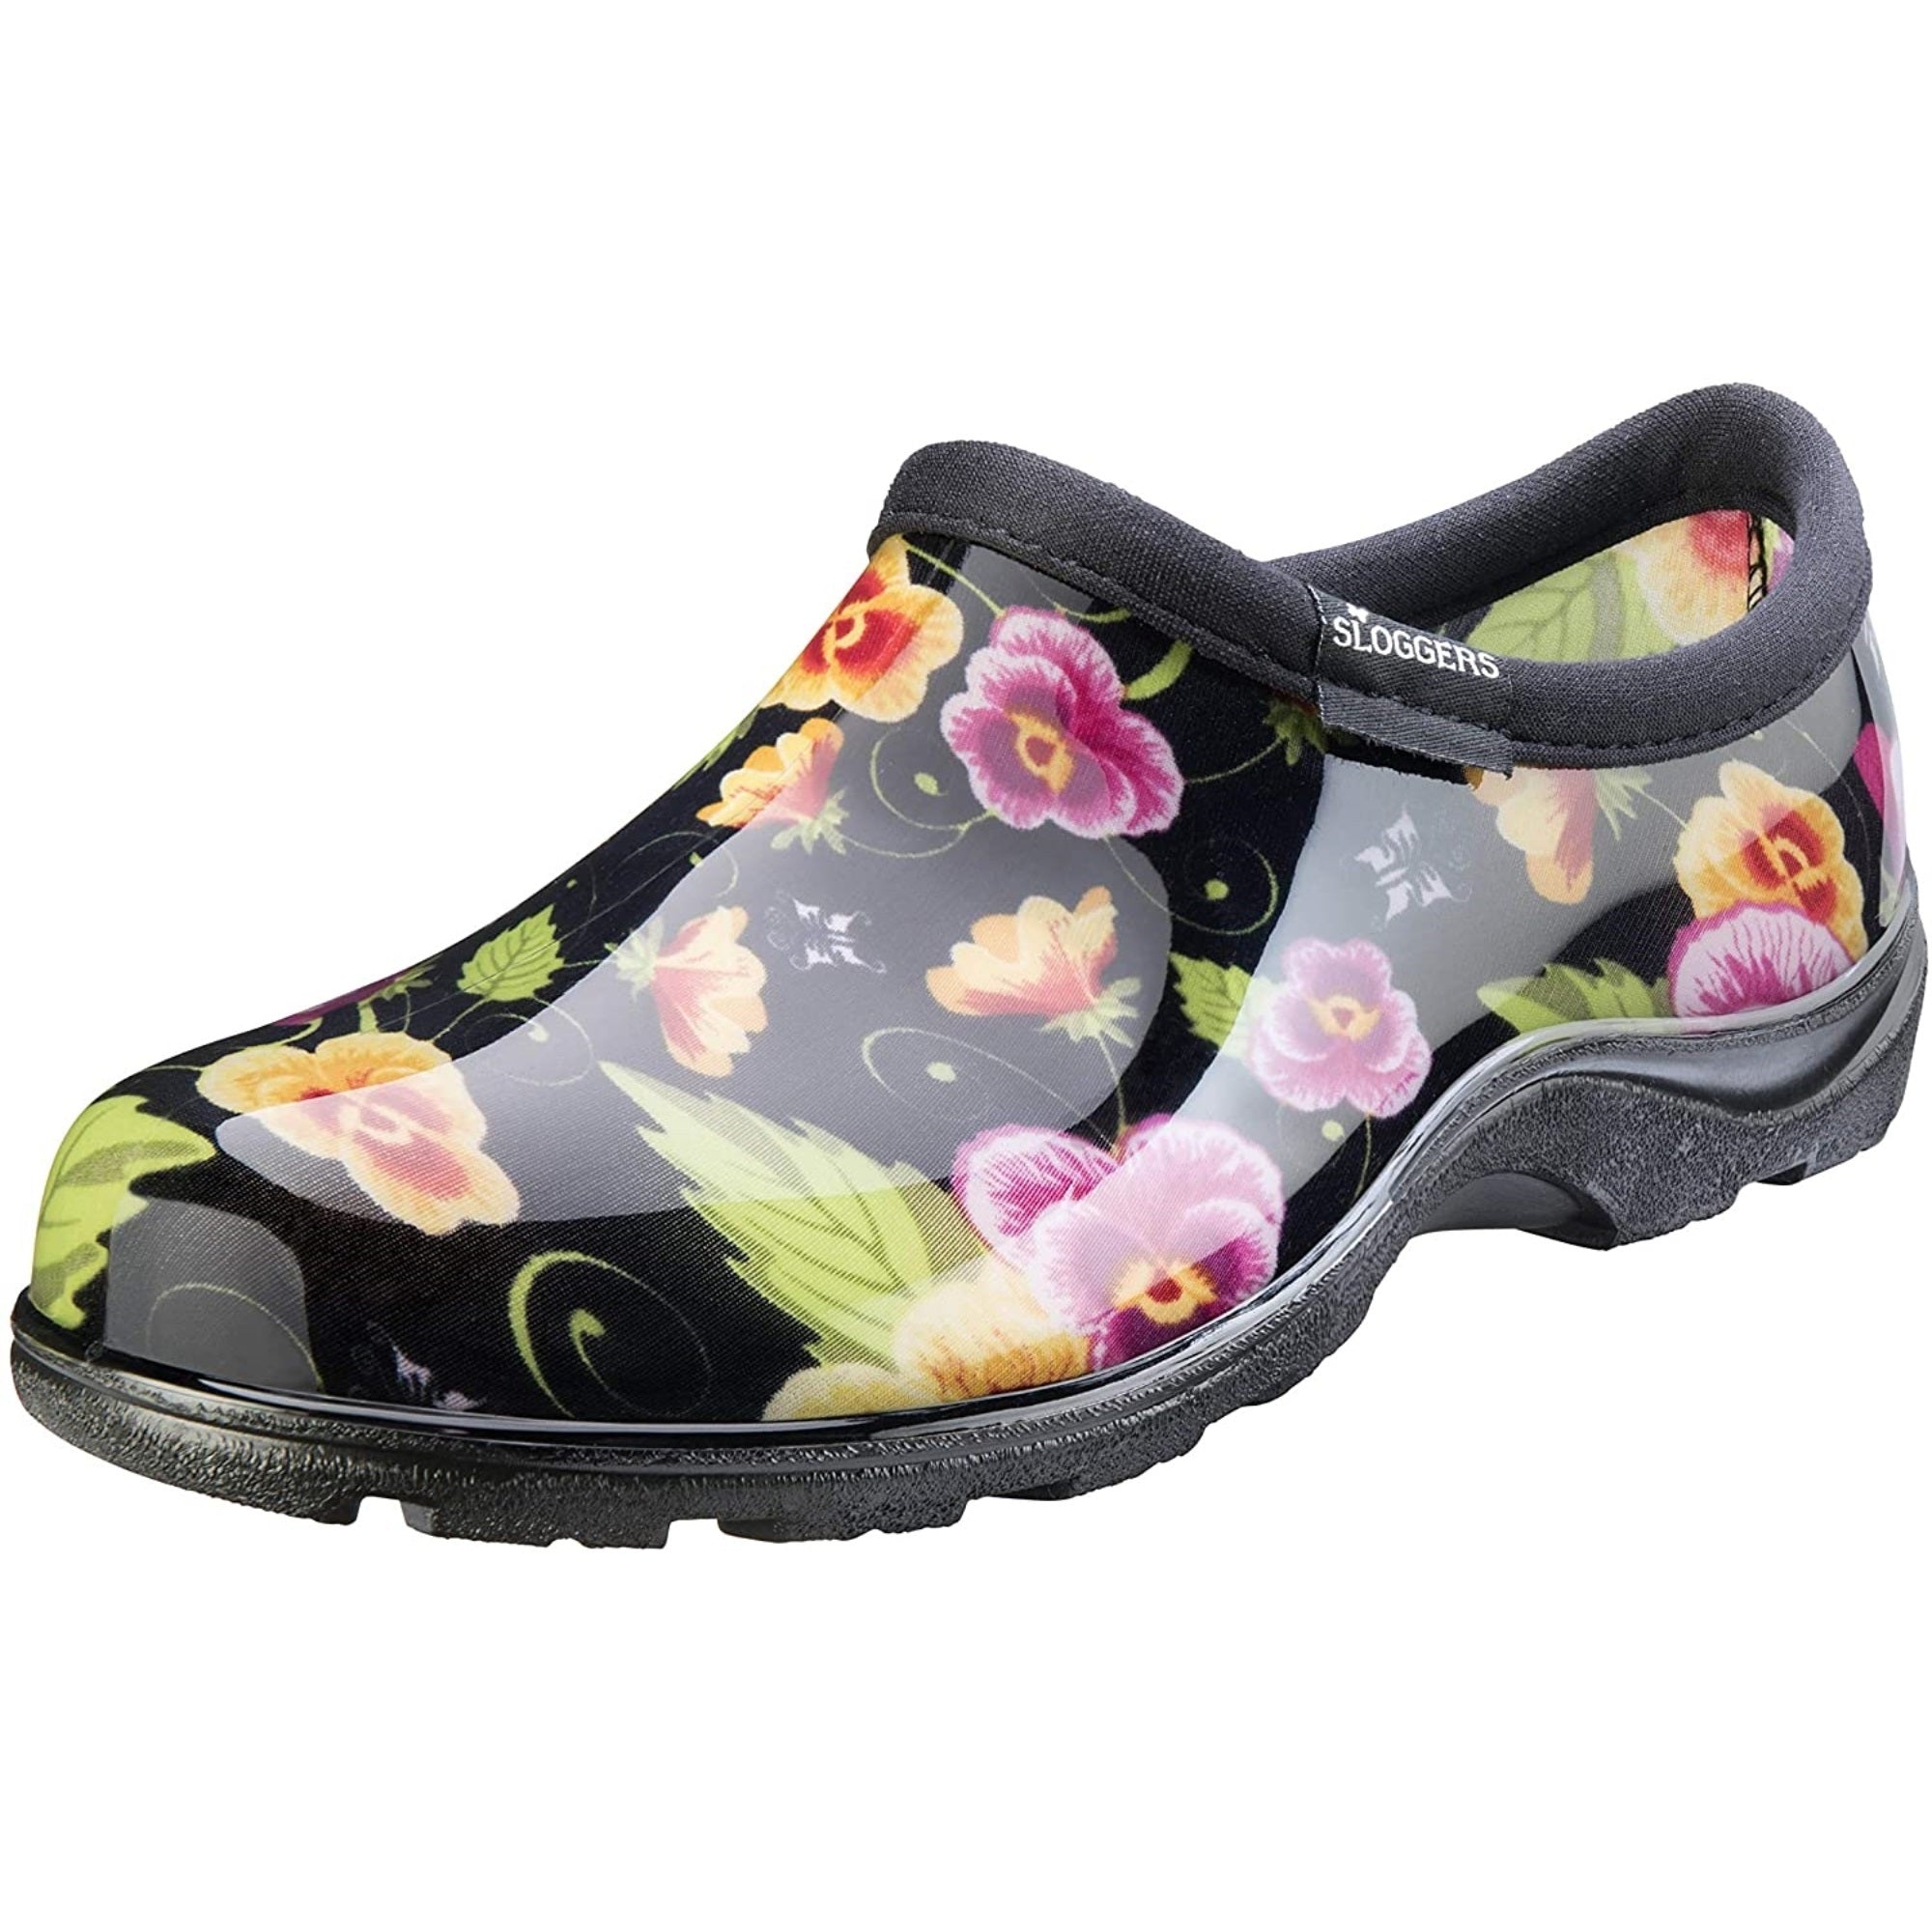 Sloggers Women's Waterproof Rain & Garden Shoe